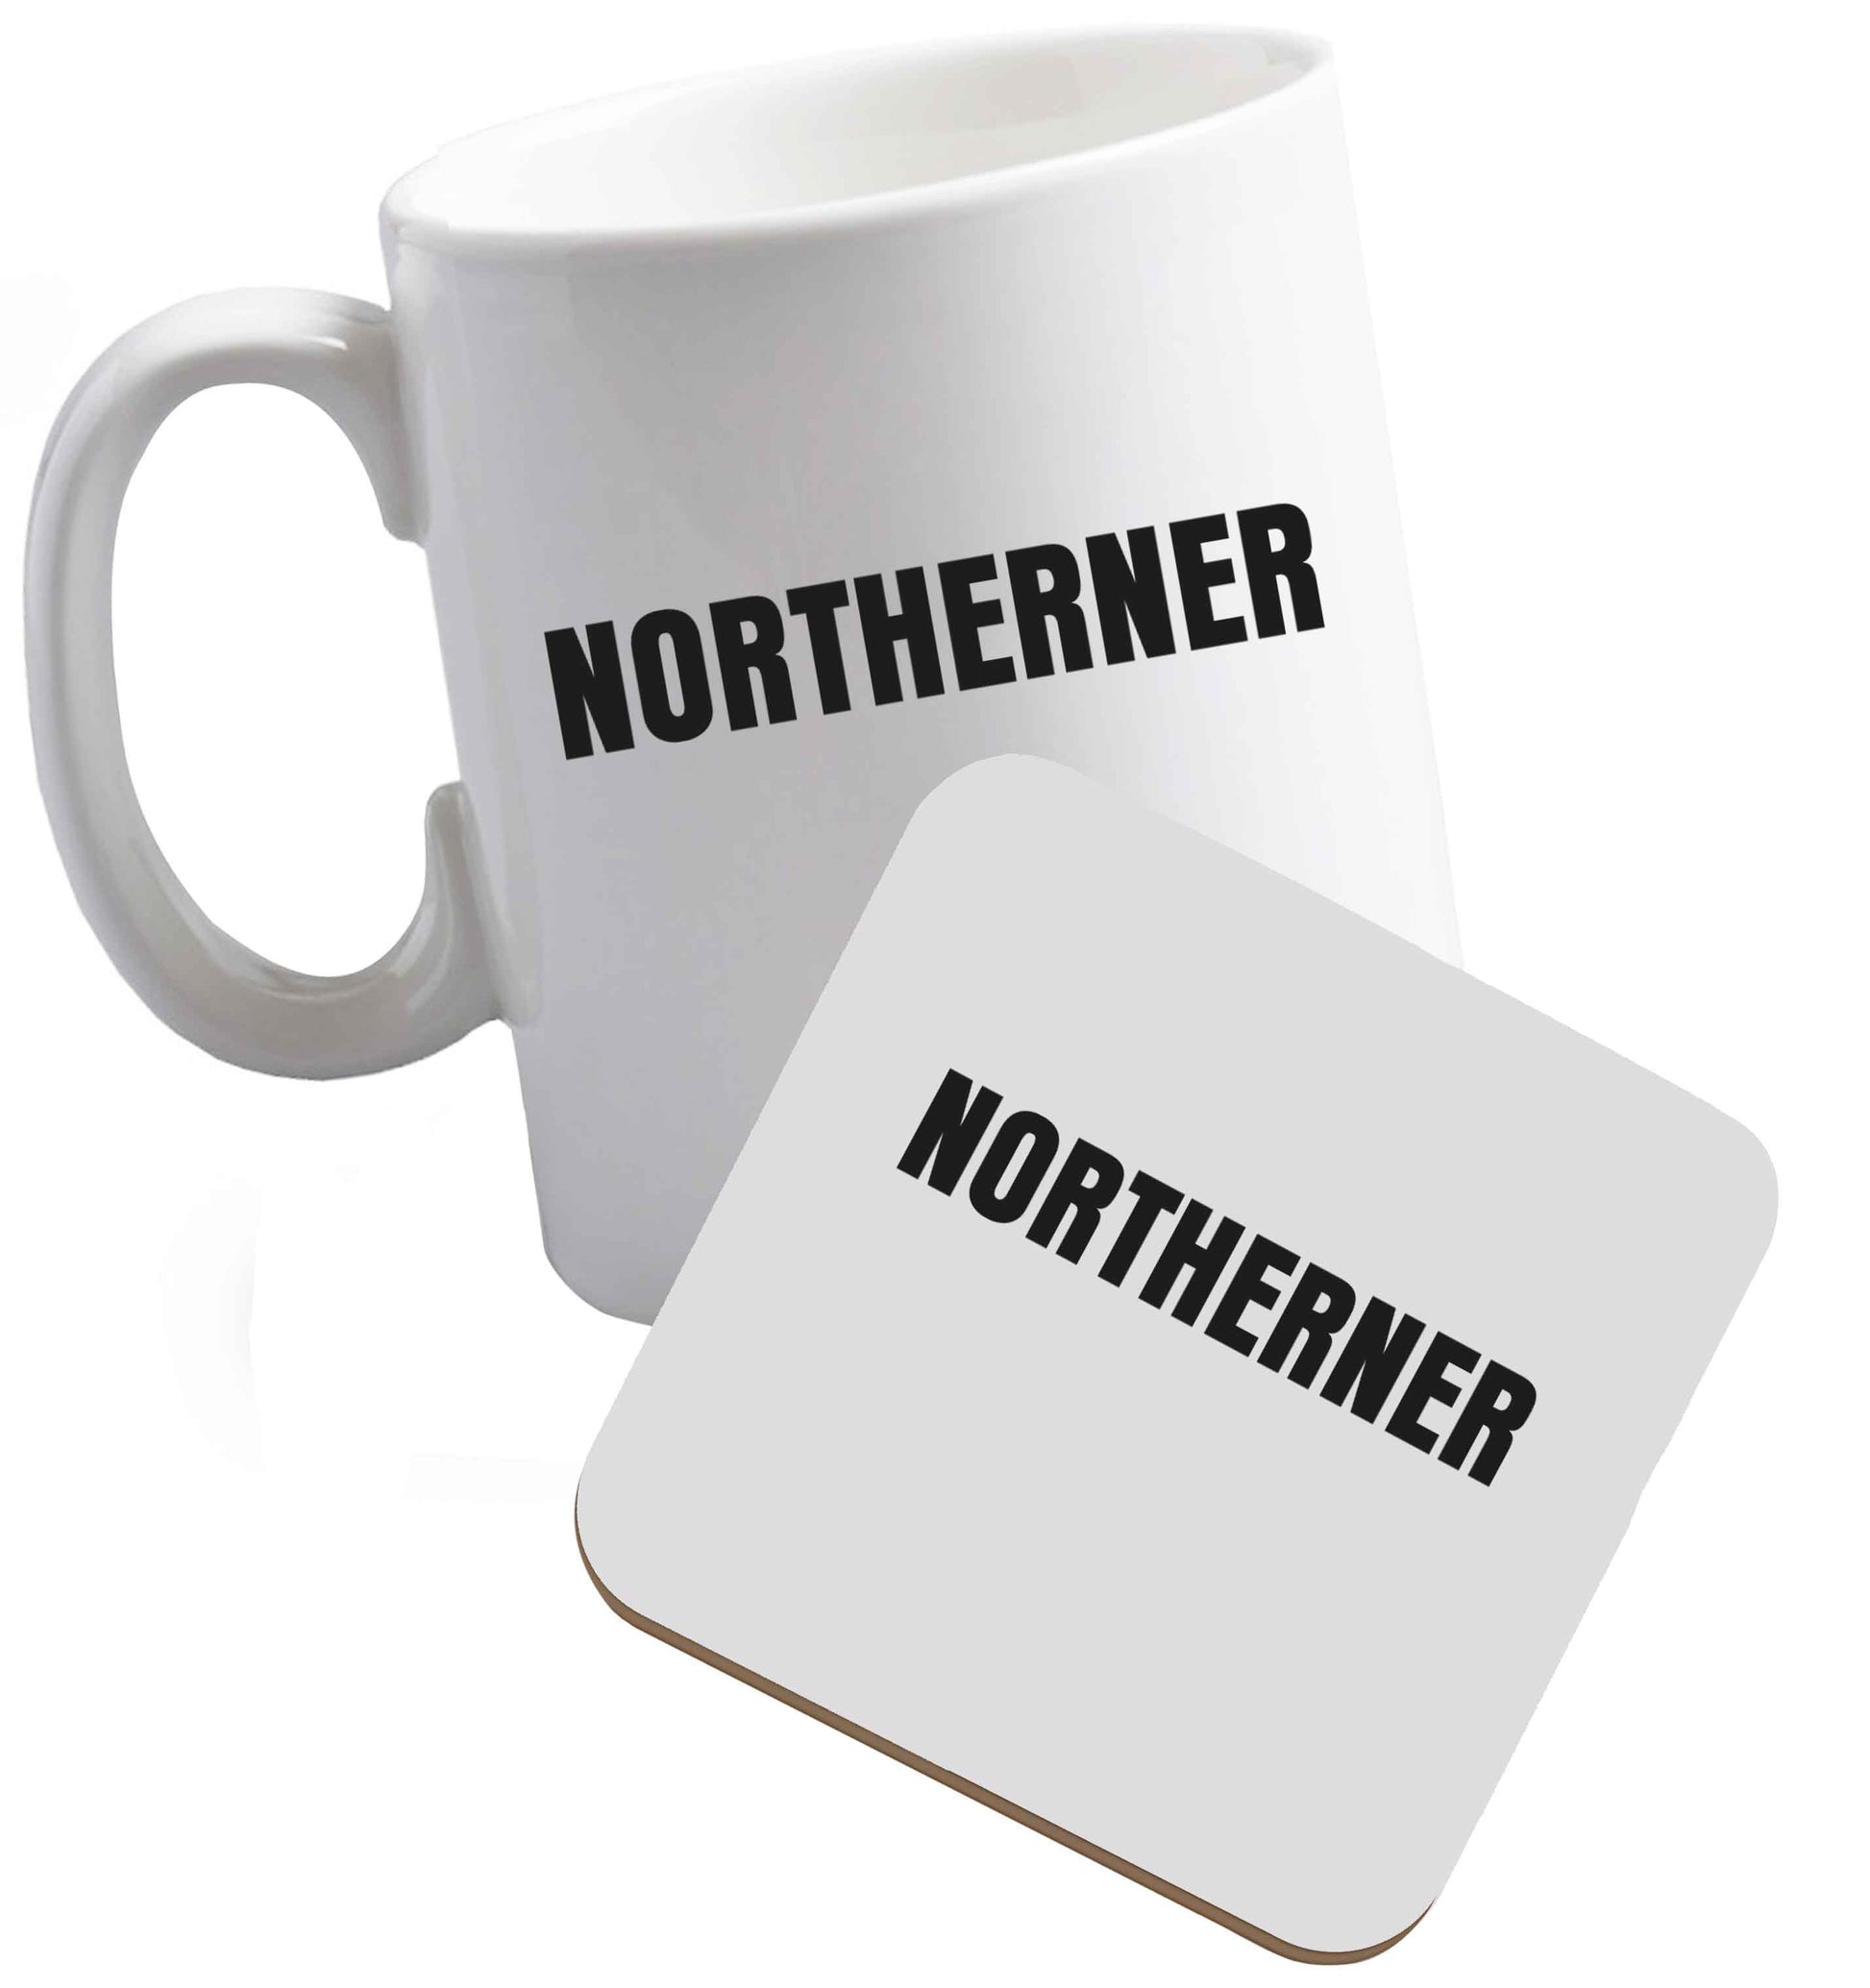 10 oz Northerner ceramic mug and coaster set right handed